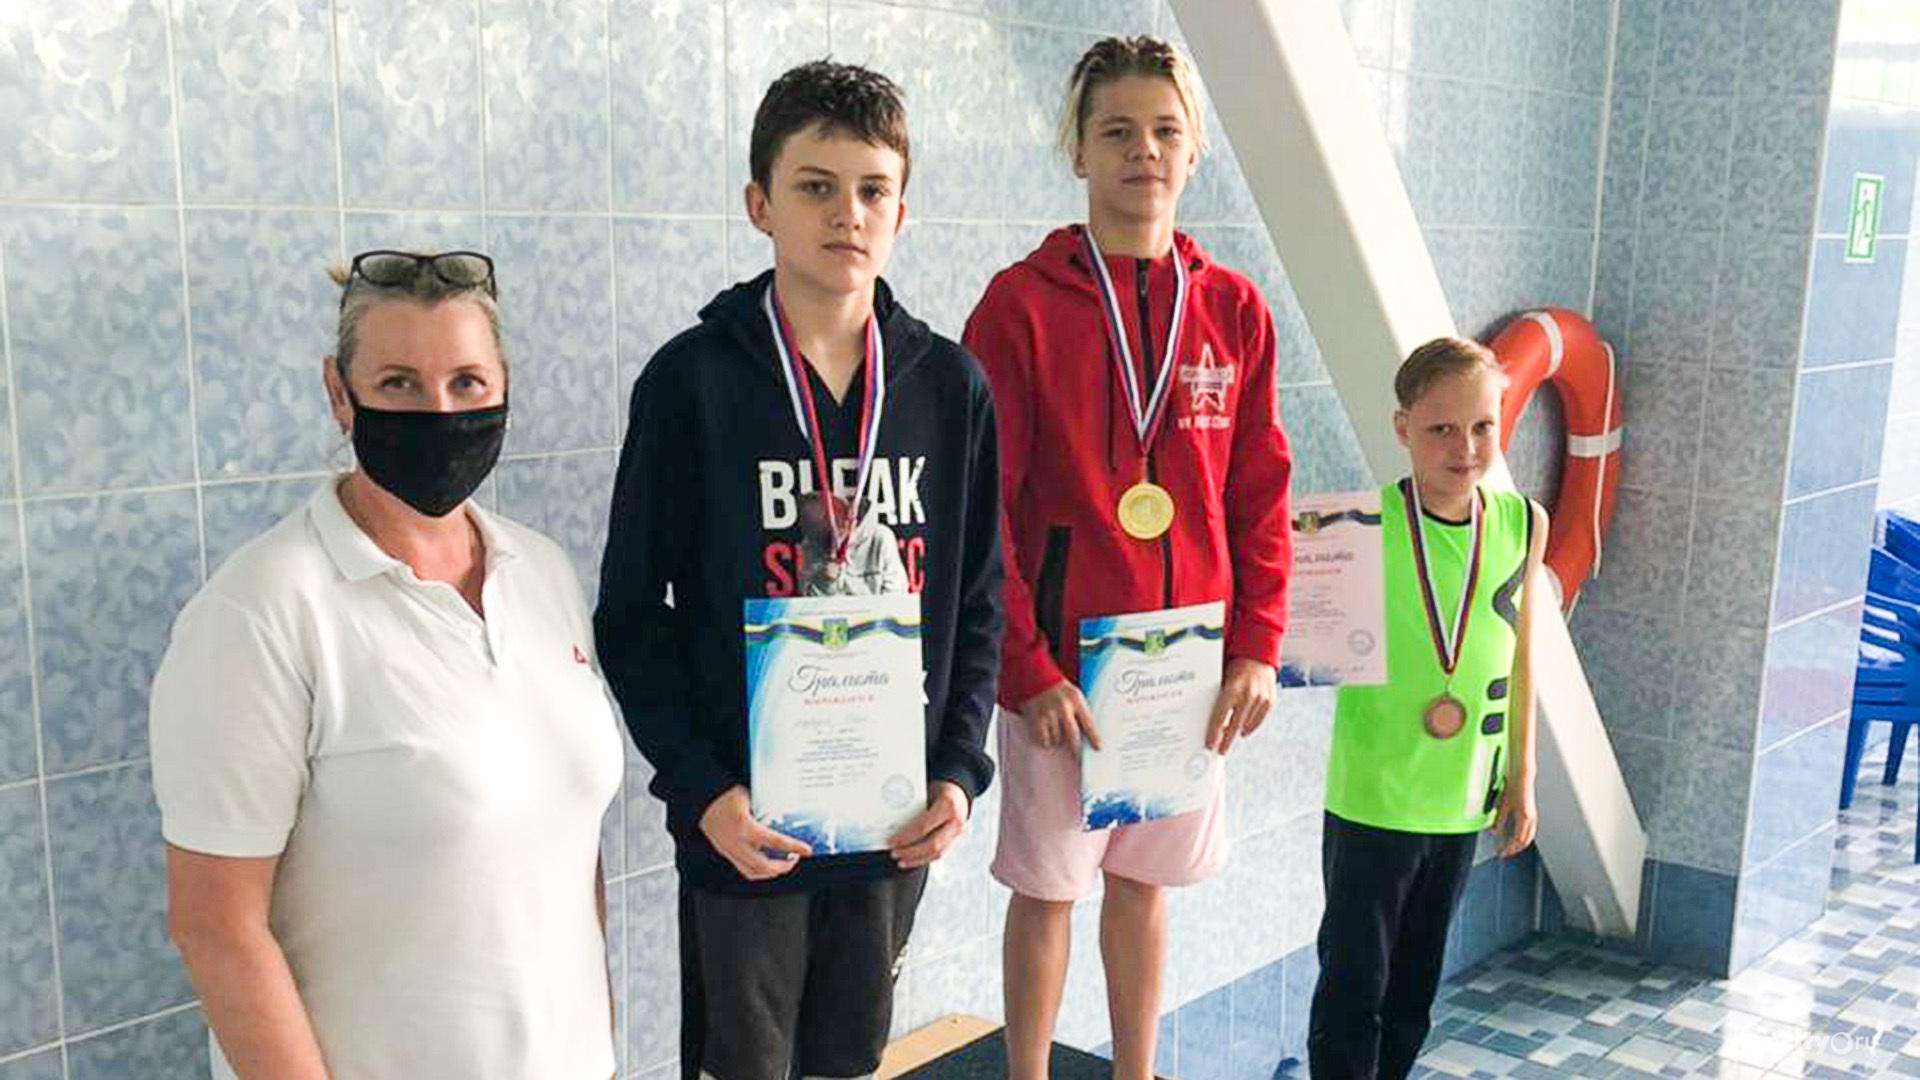 Две сотни медалей разыграли на городских соревнованиях по плаванию